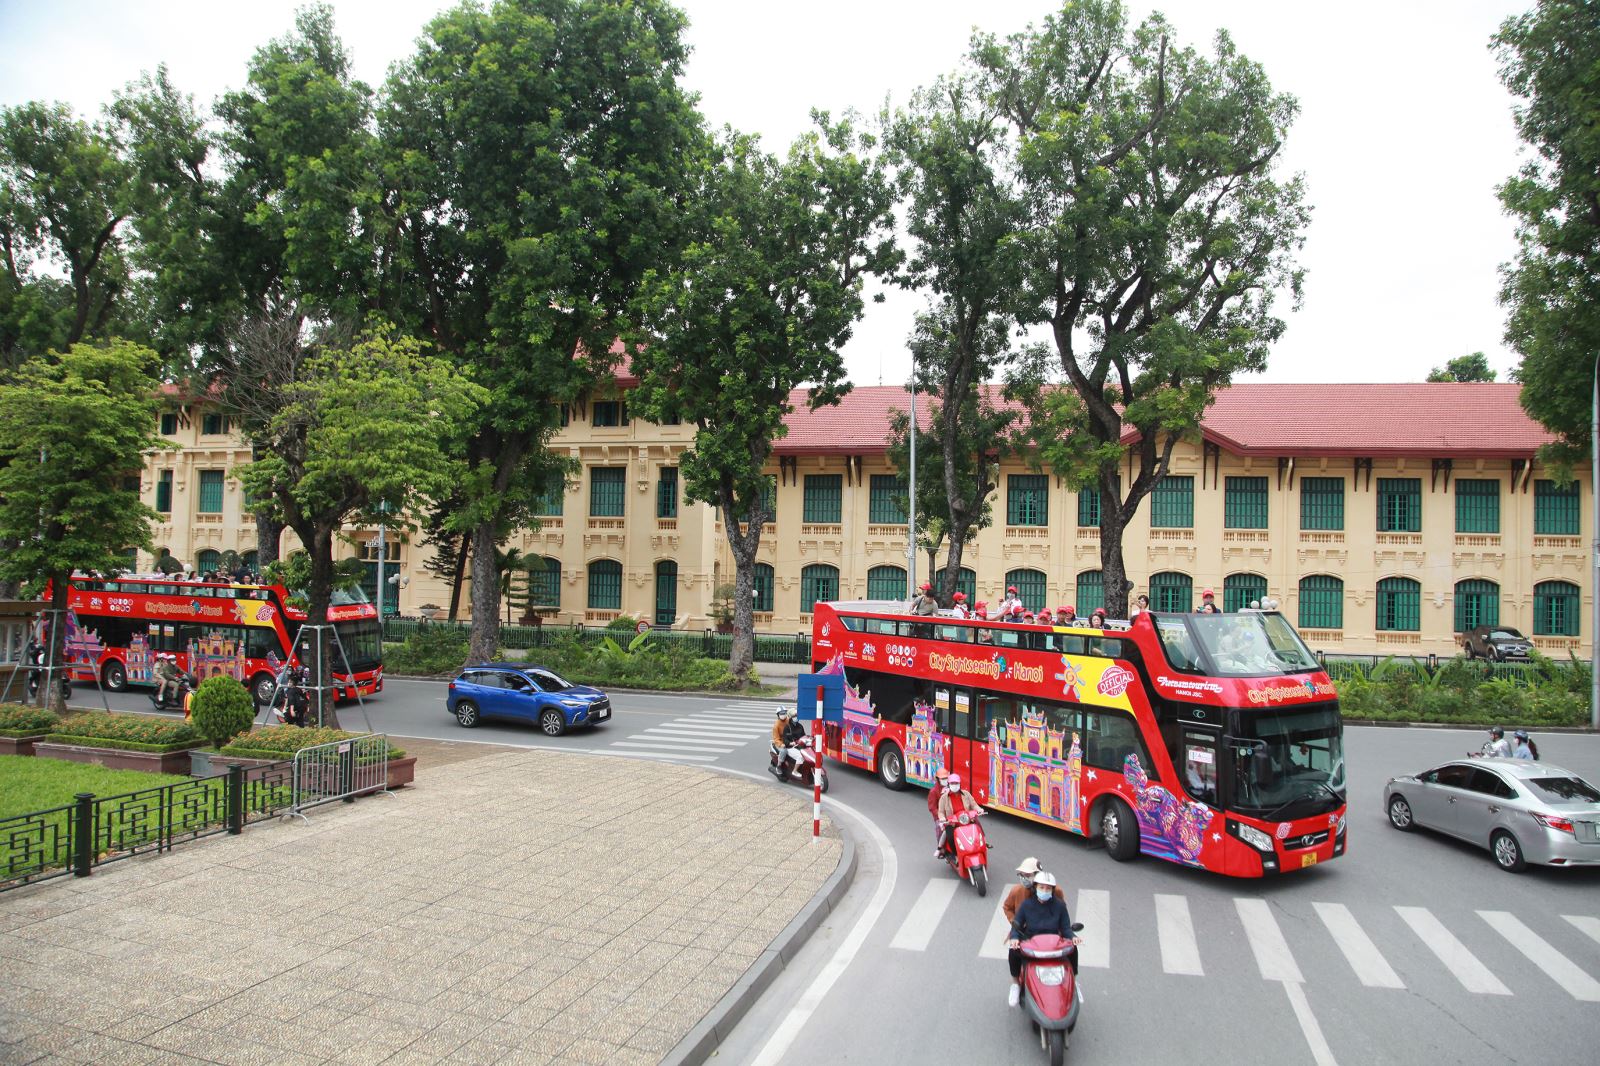 Ra mắt thương hiệu City Sightseeing tại Hà Nội